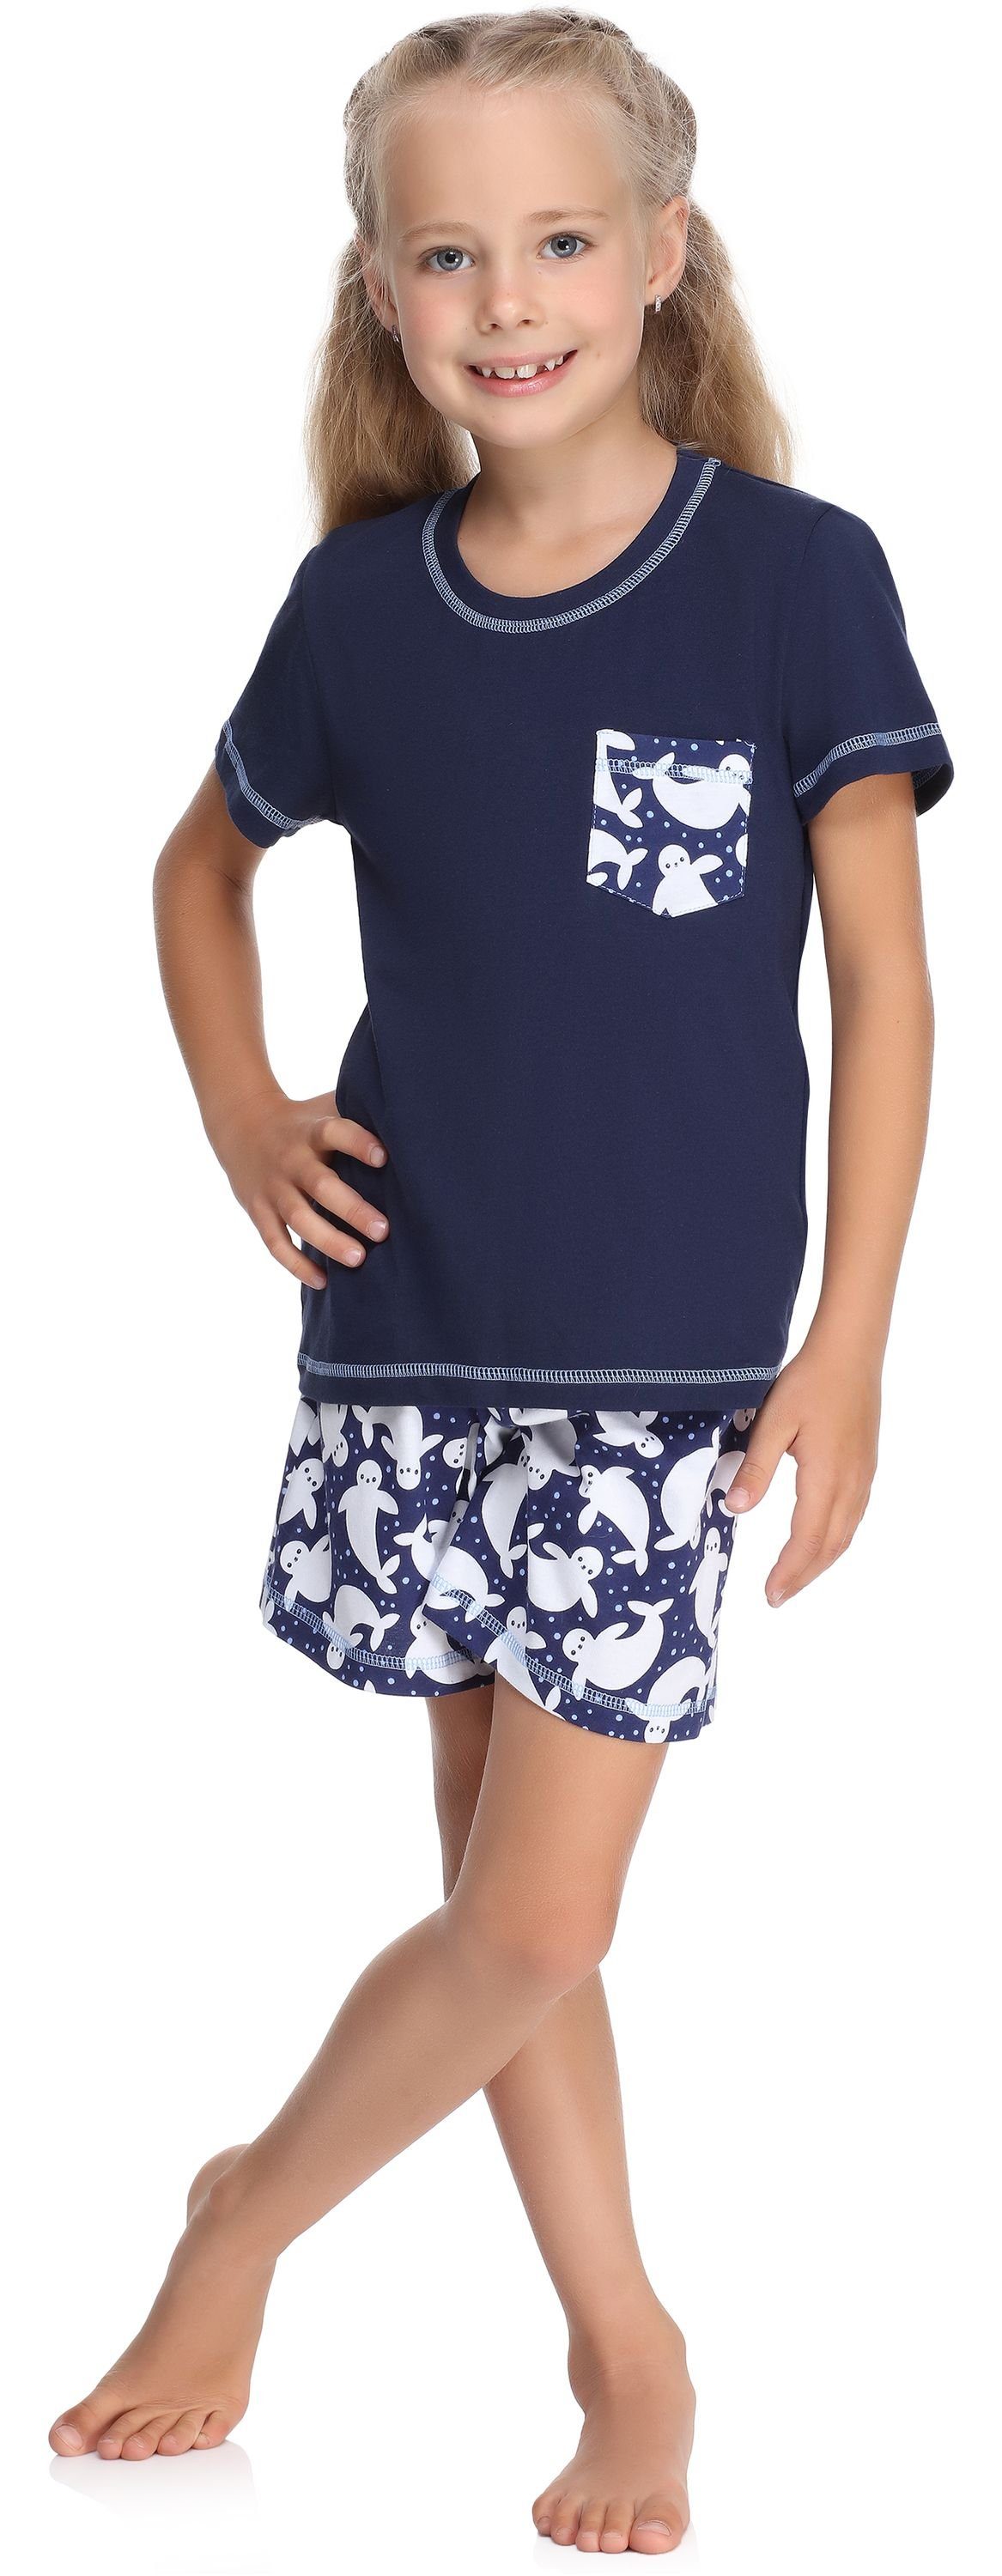 MS10-292 Baumwolle Kurz Mädchen Merry Style Schlafanzug Marine/Punkte Schlafanzüge Set Pyjama aus